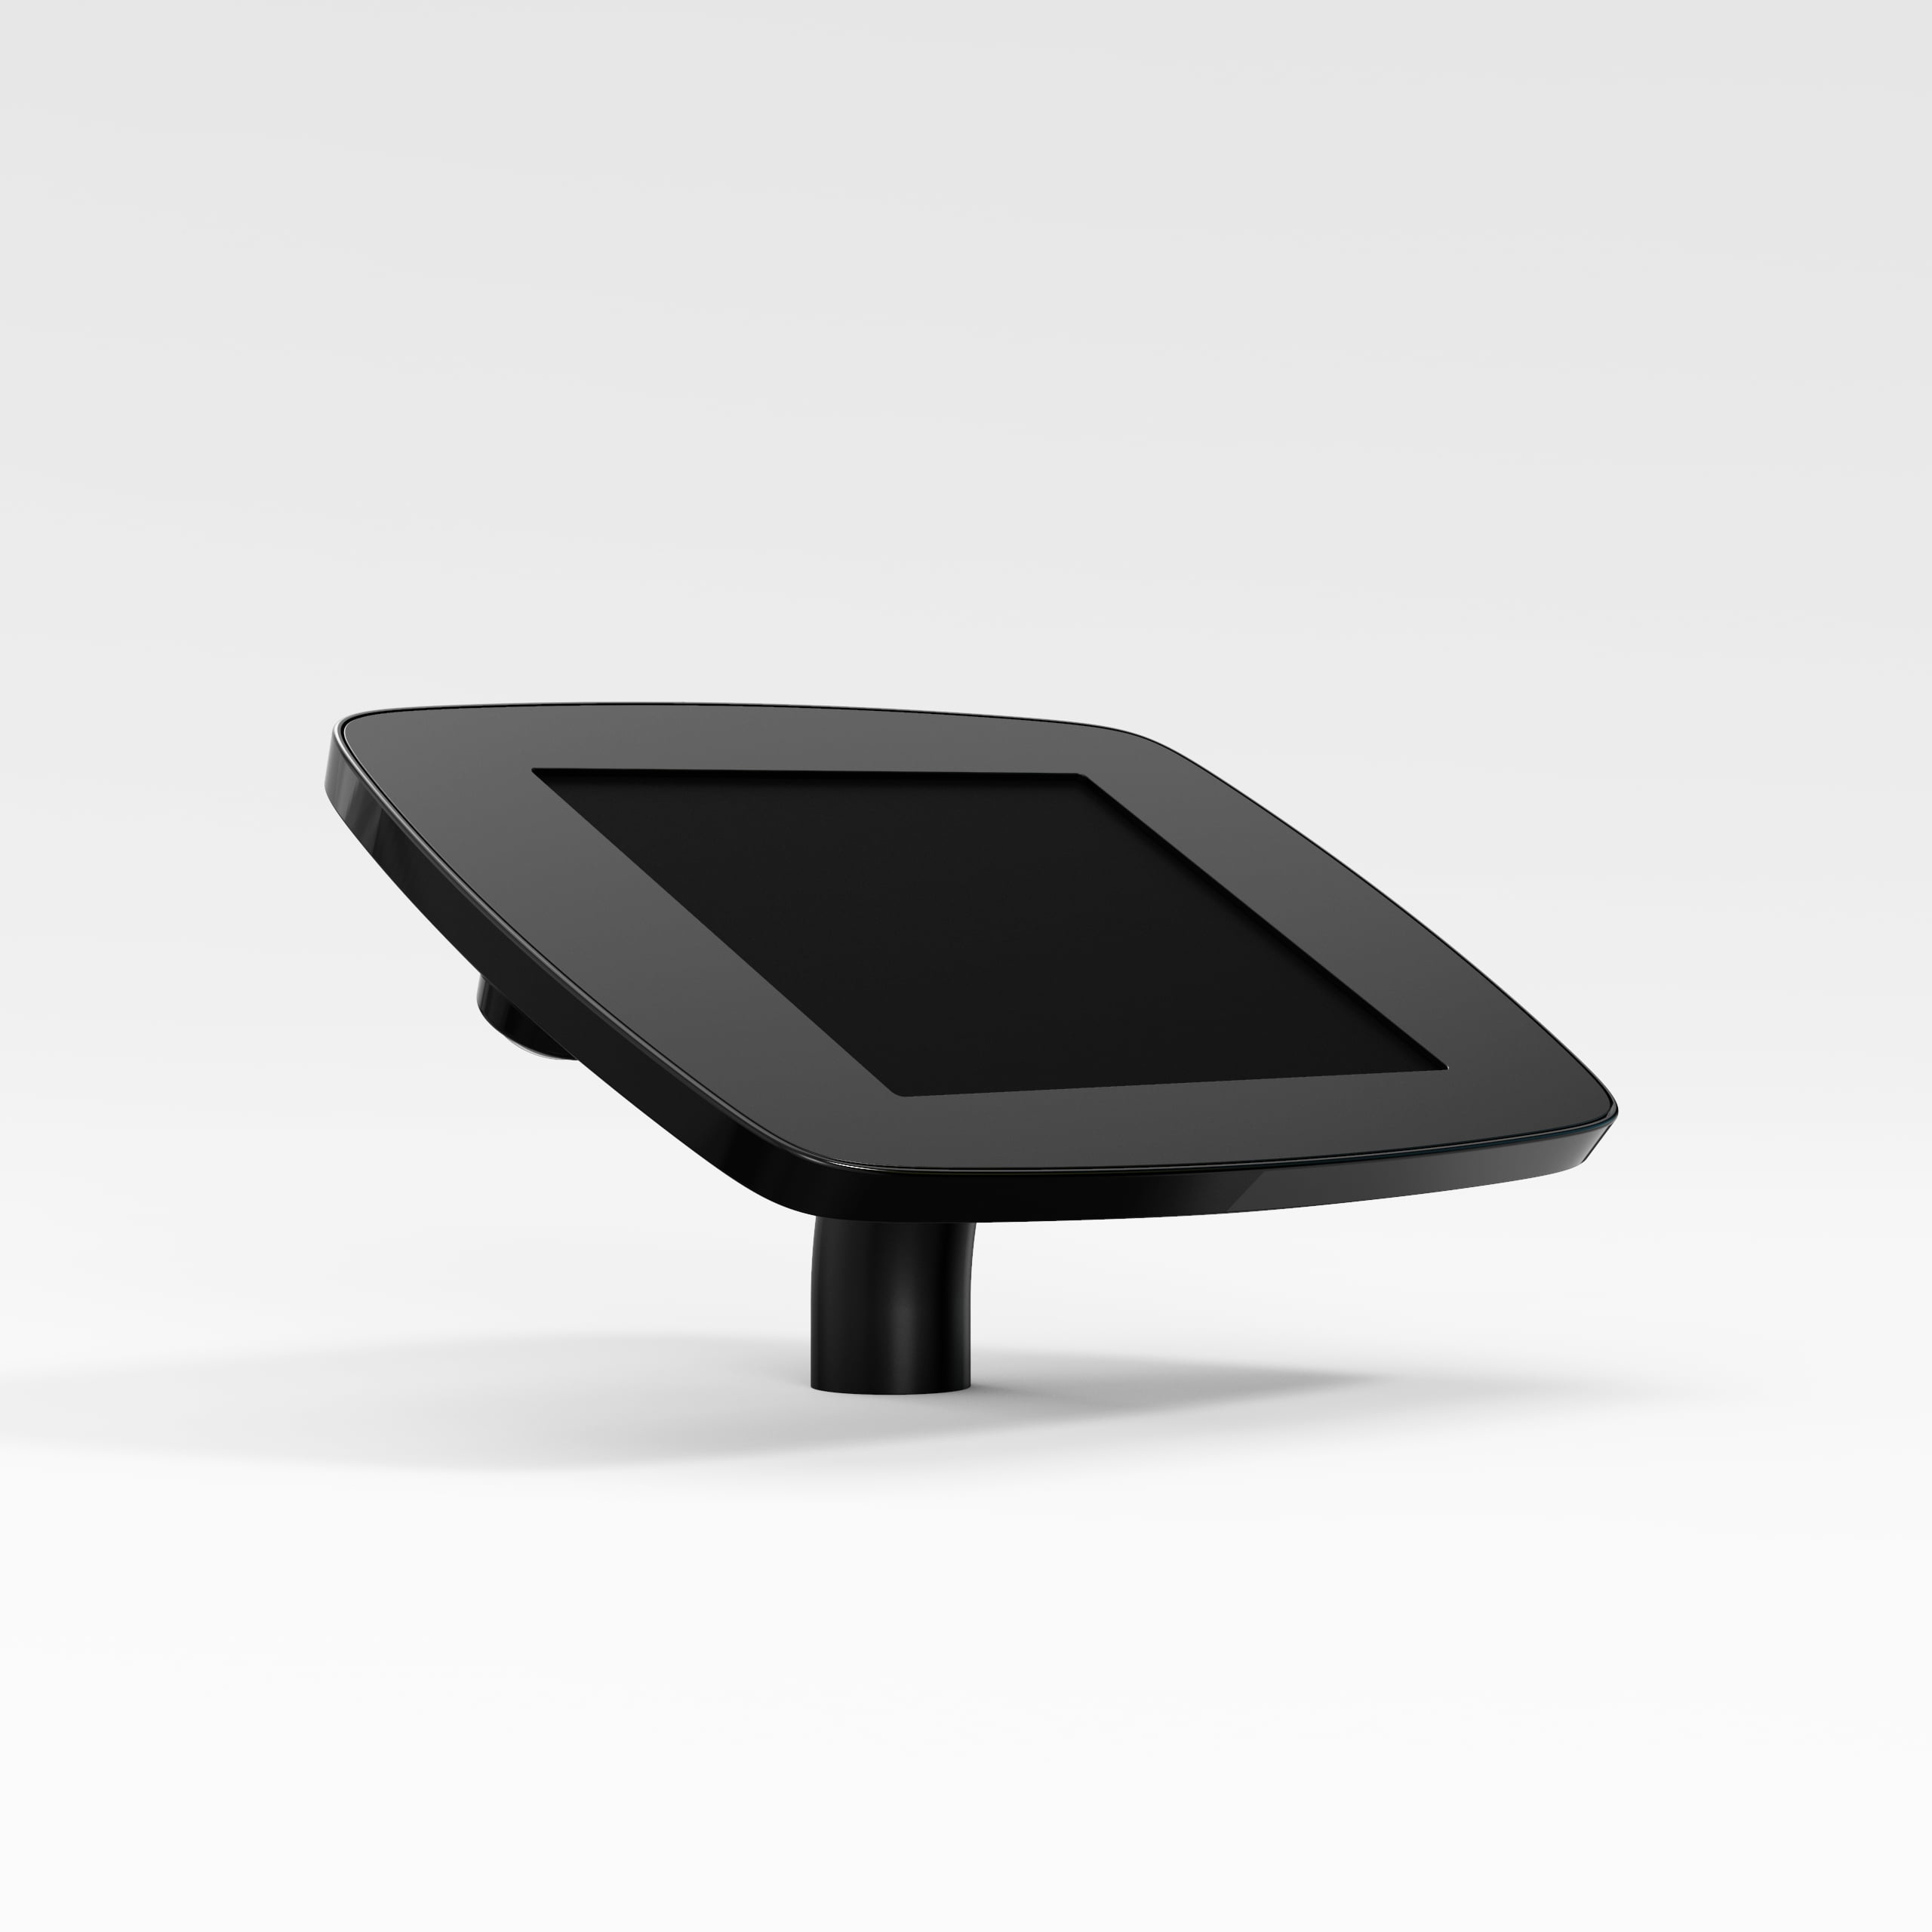 Bouncepad Desk supporto antifurto per tablet 20,1 cm [7.9] Nero (DESKBLKOPENCAM/OPENHOME M3)